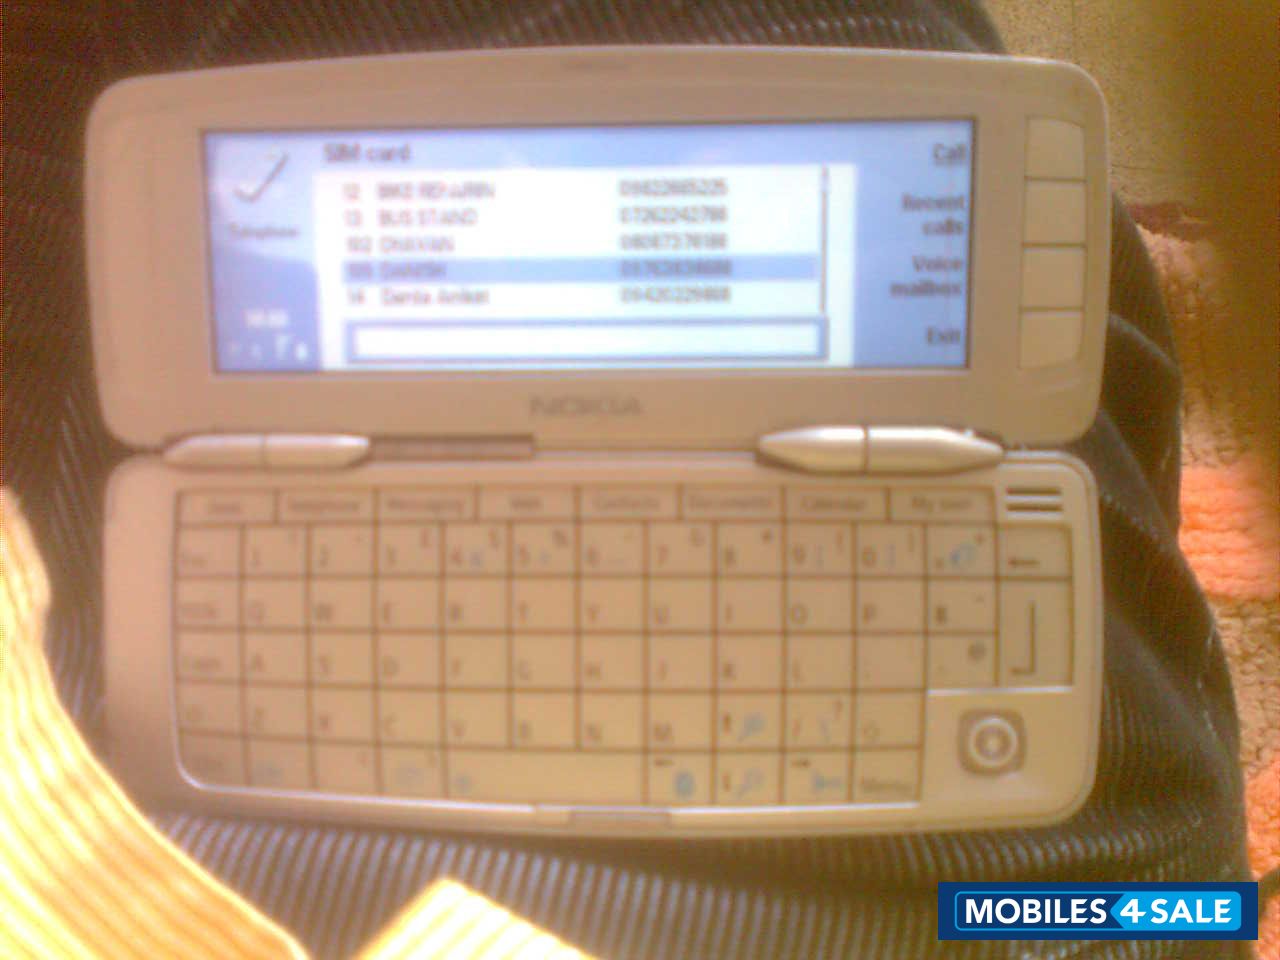 Grey Nokia 9300